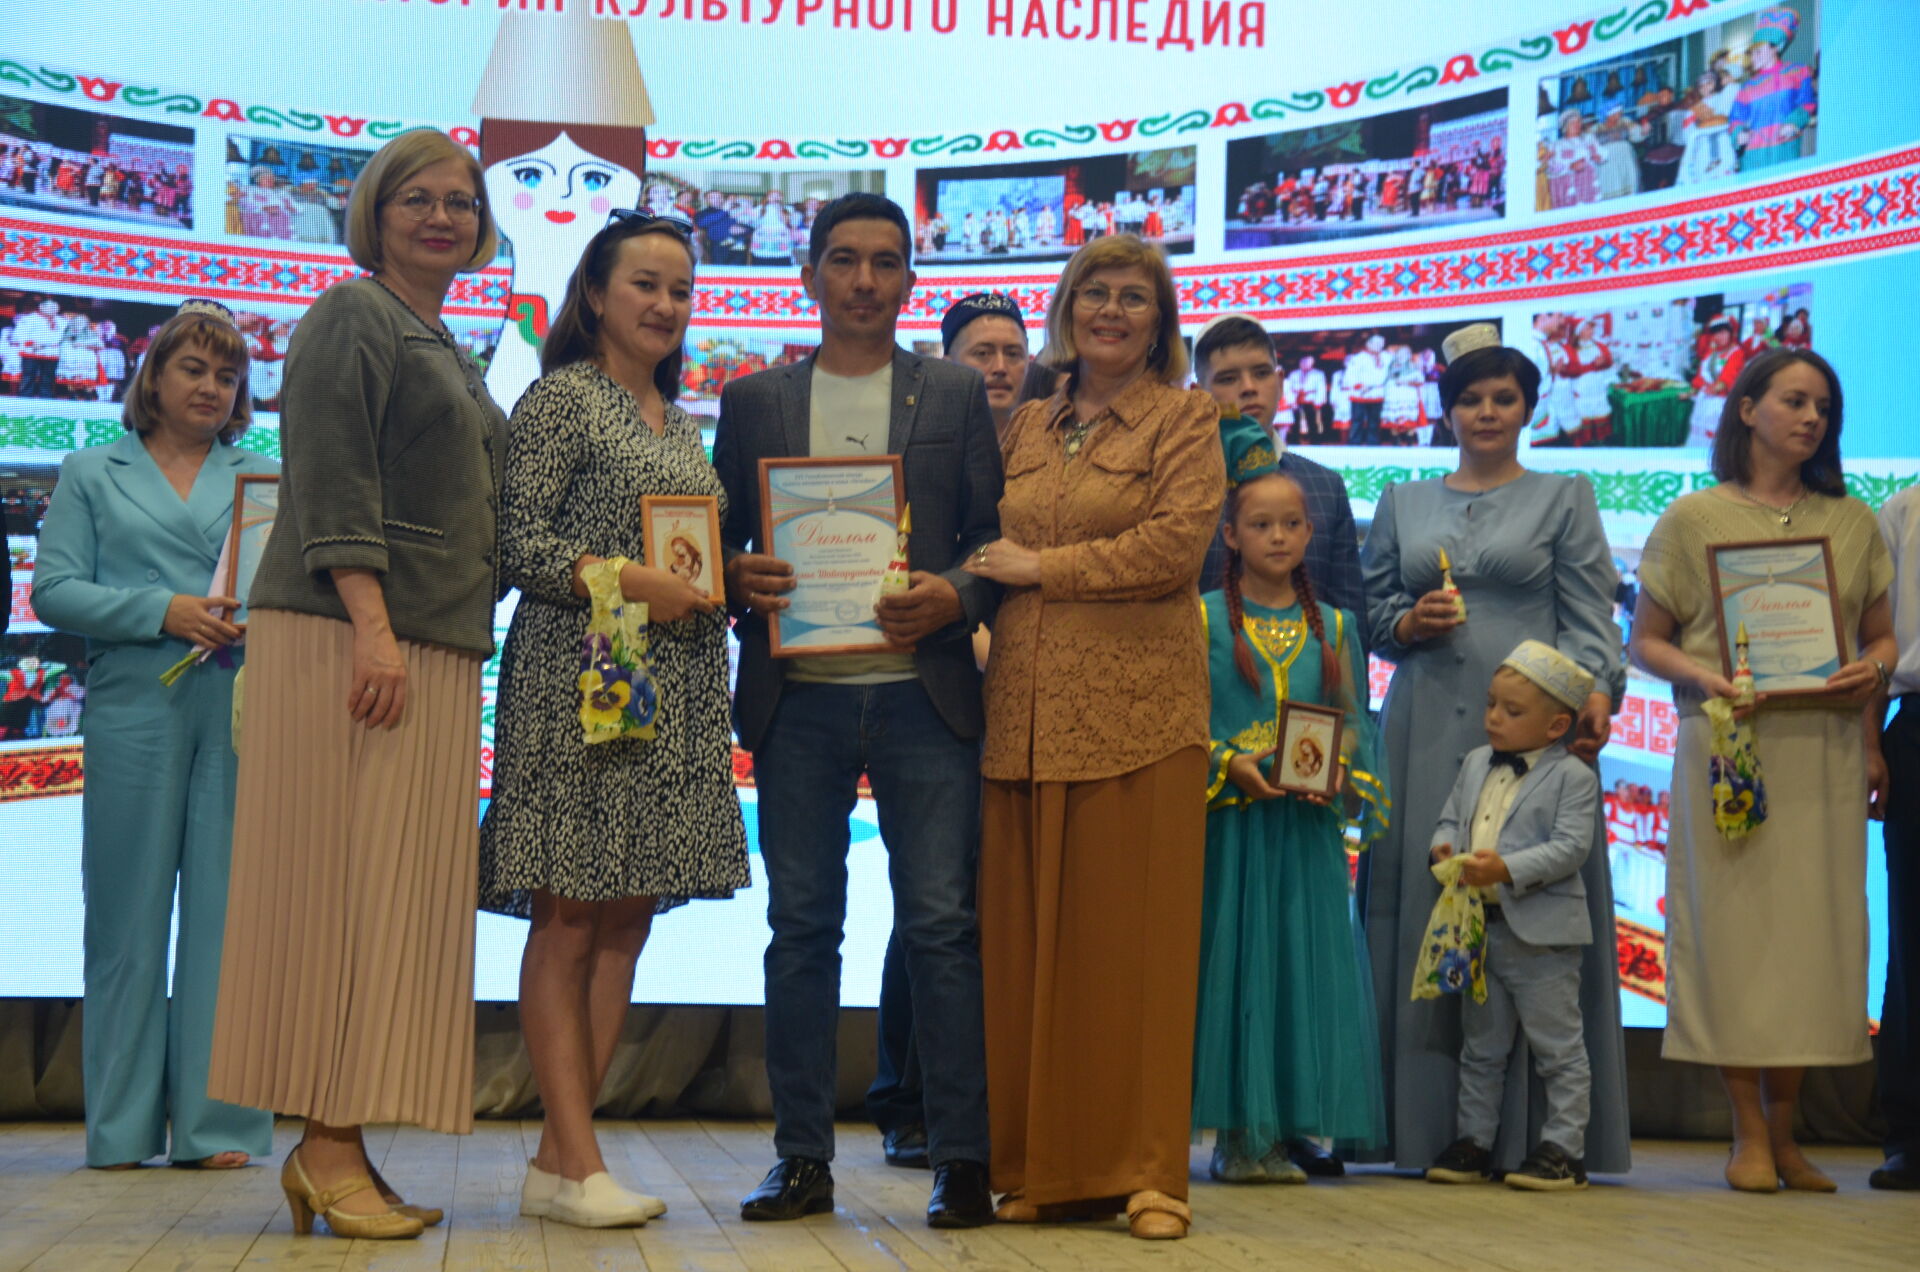 В Сарманово состоялся зональный фестиваль республиканского конкурса красоты материнства и семьи «Нечкәбил»